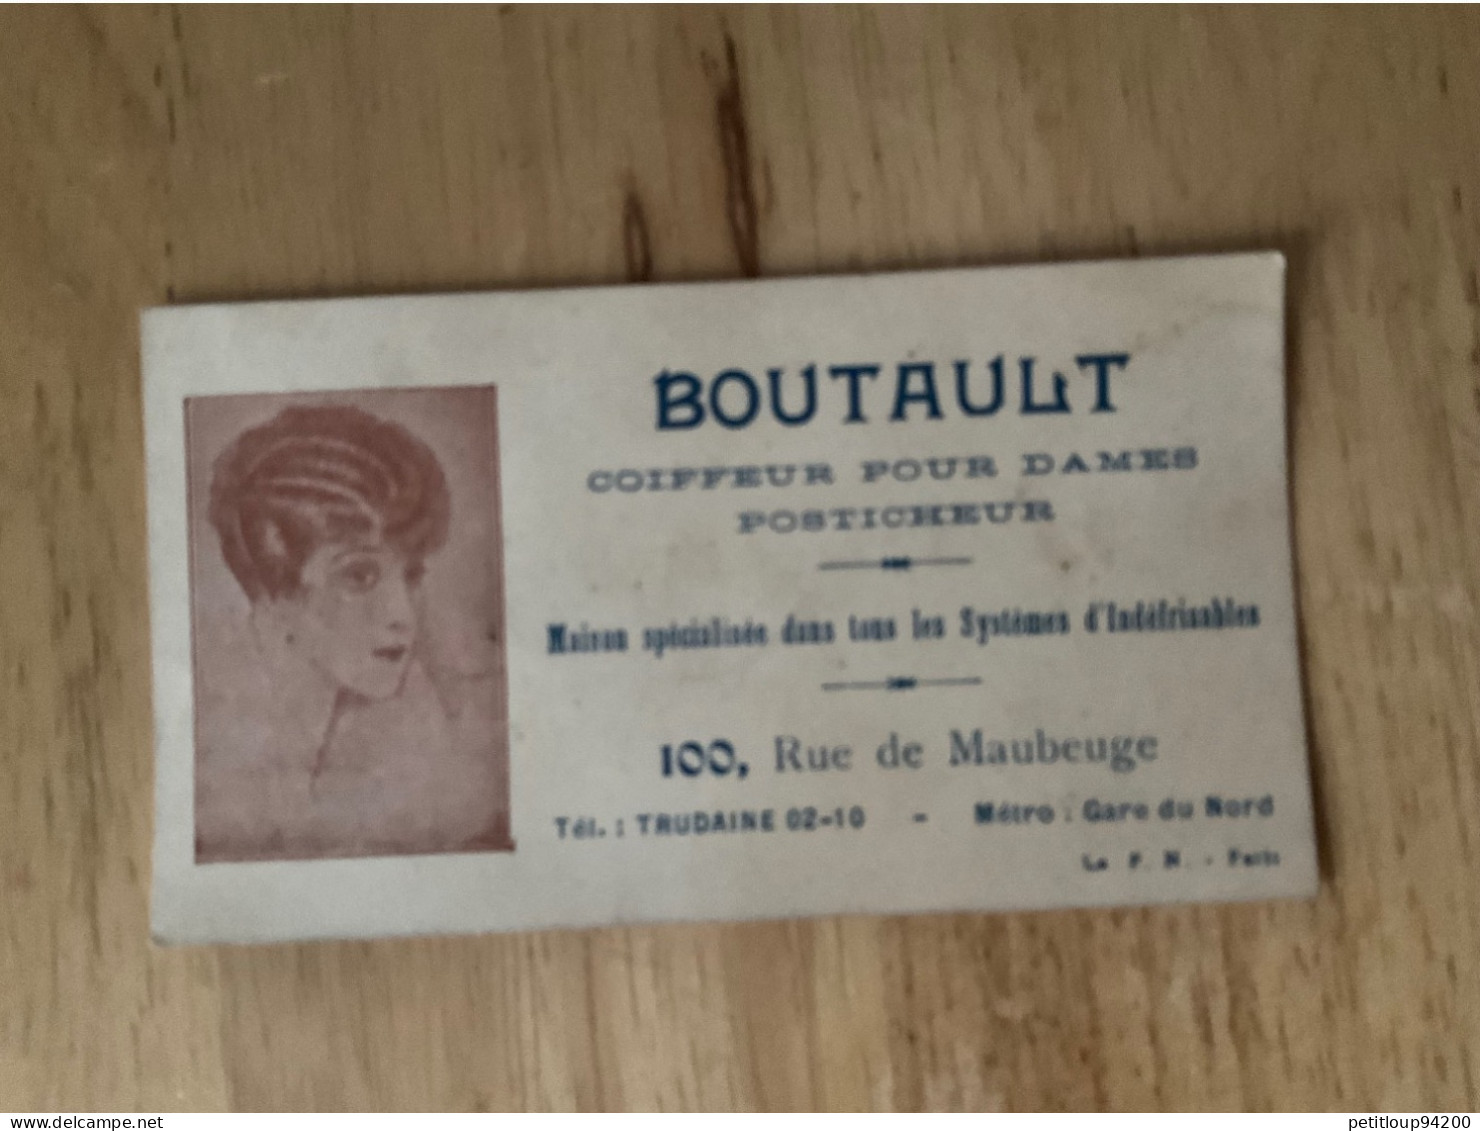 CARTE DE VISITE Coiffeur Pour Dames  Posticheur  BOUTAULT  Paris - Visiting Cards